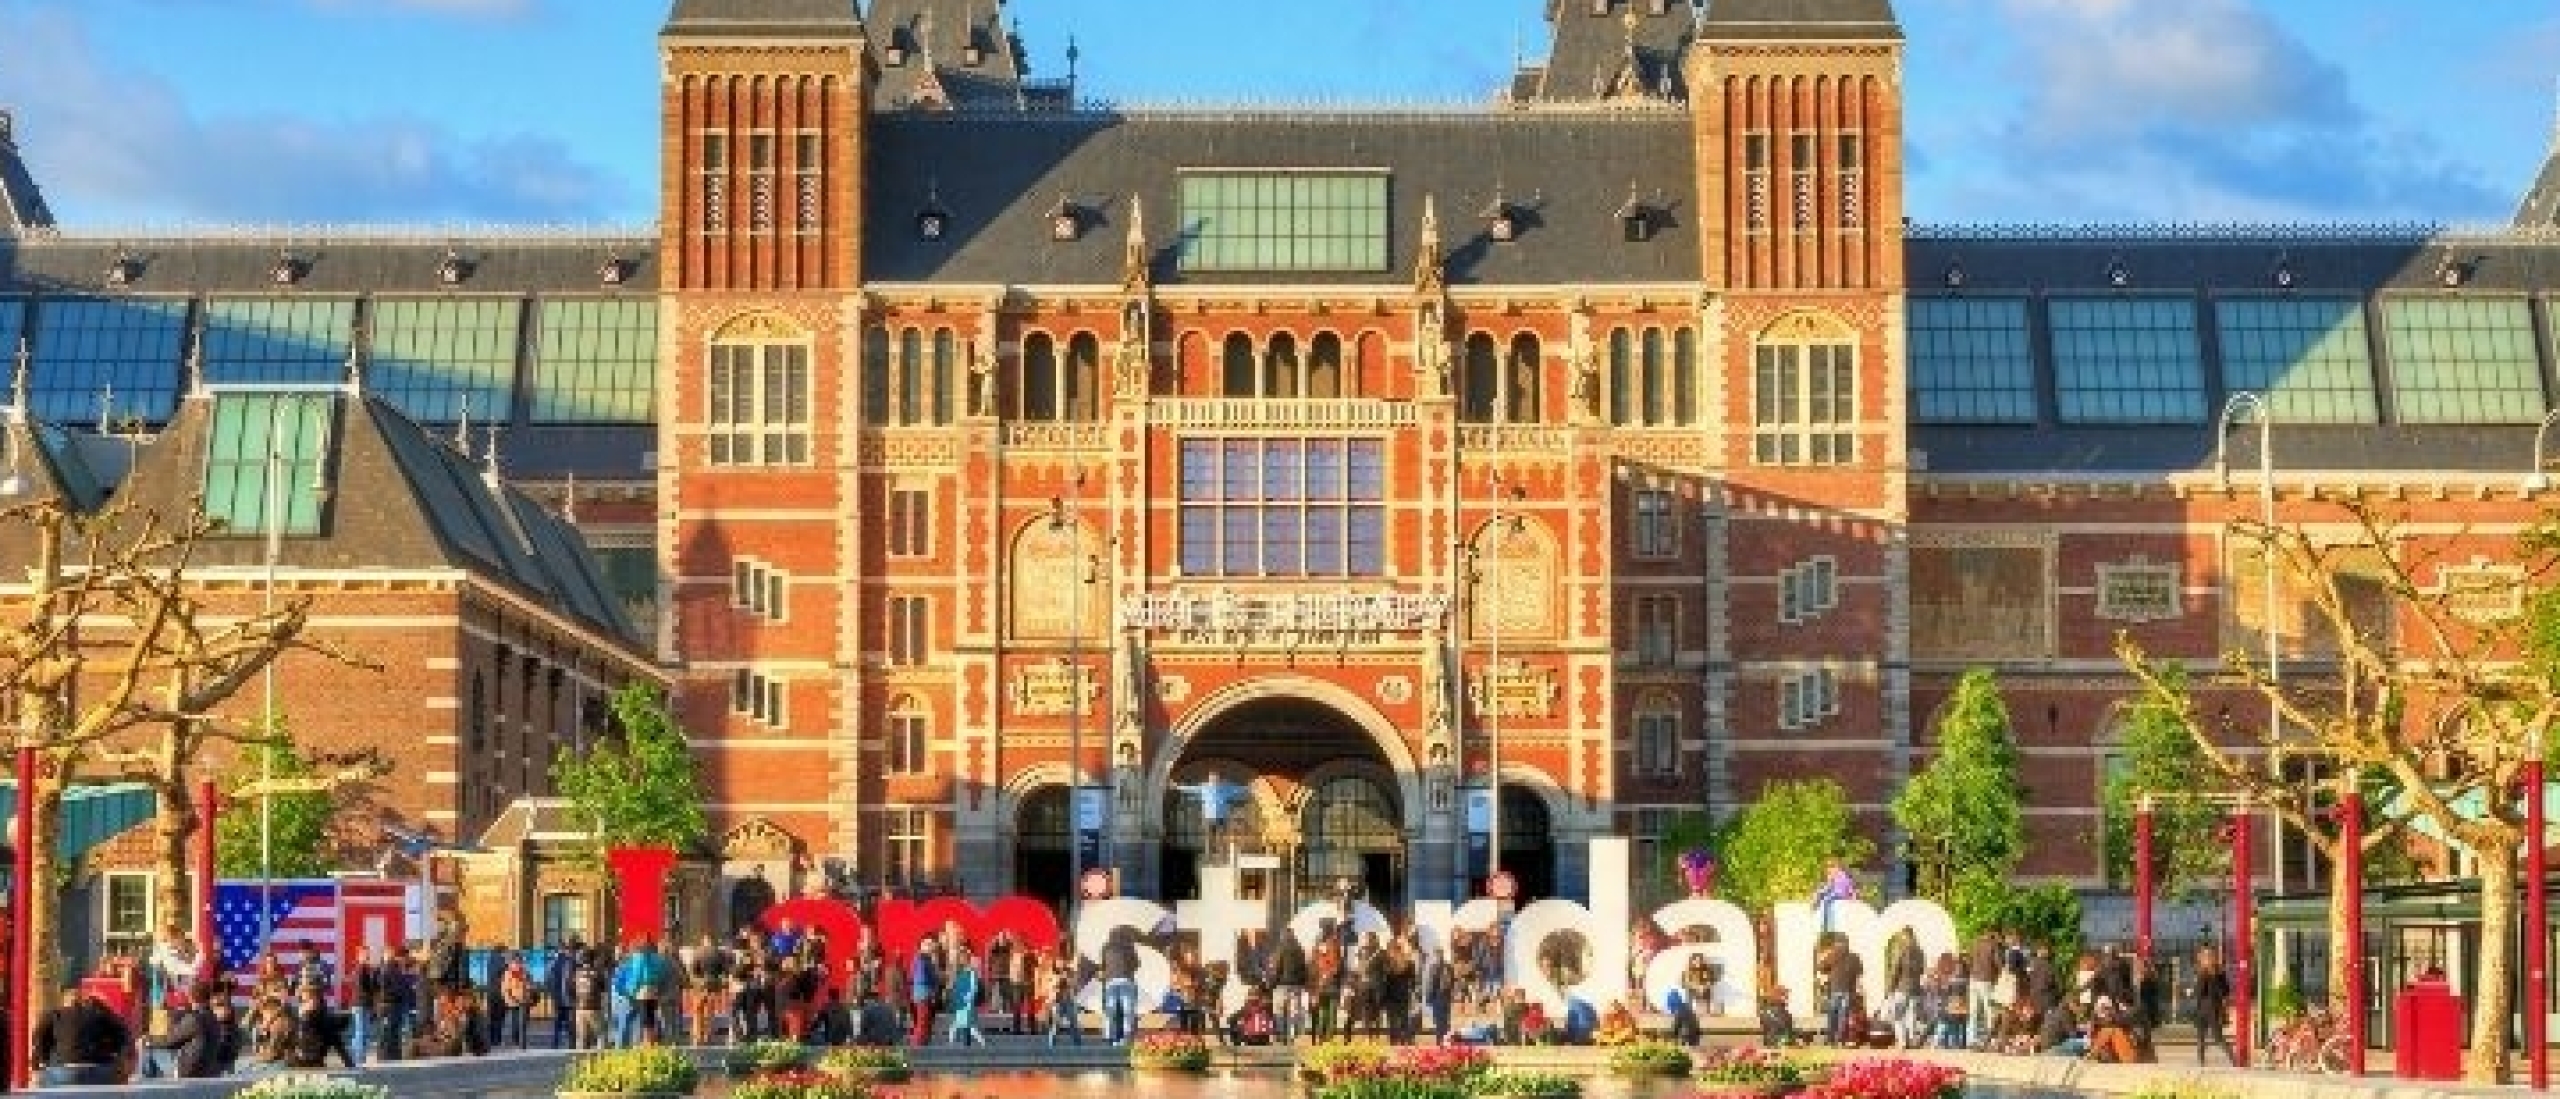 Les 10 meilleures choses à faire à Amsterdam